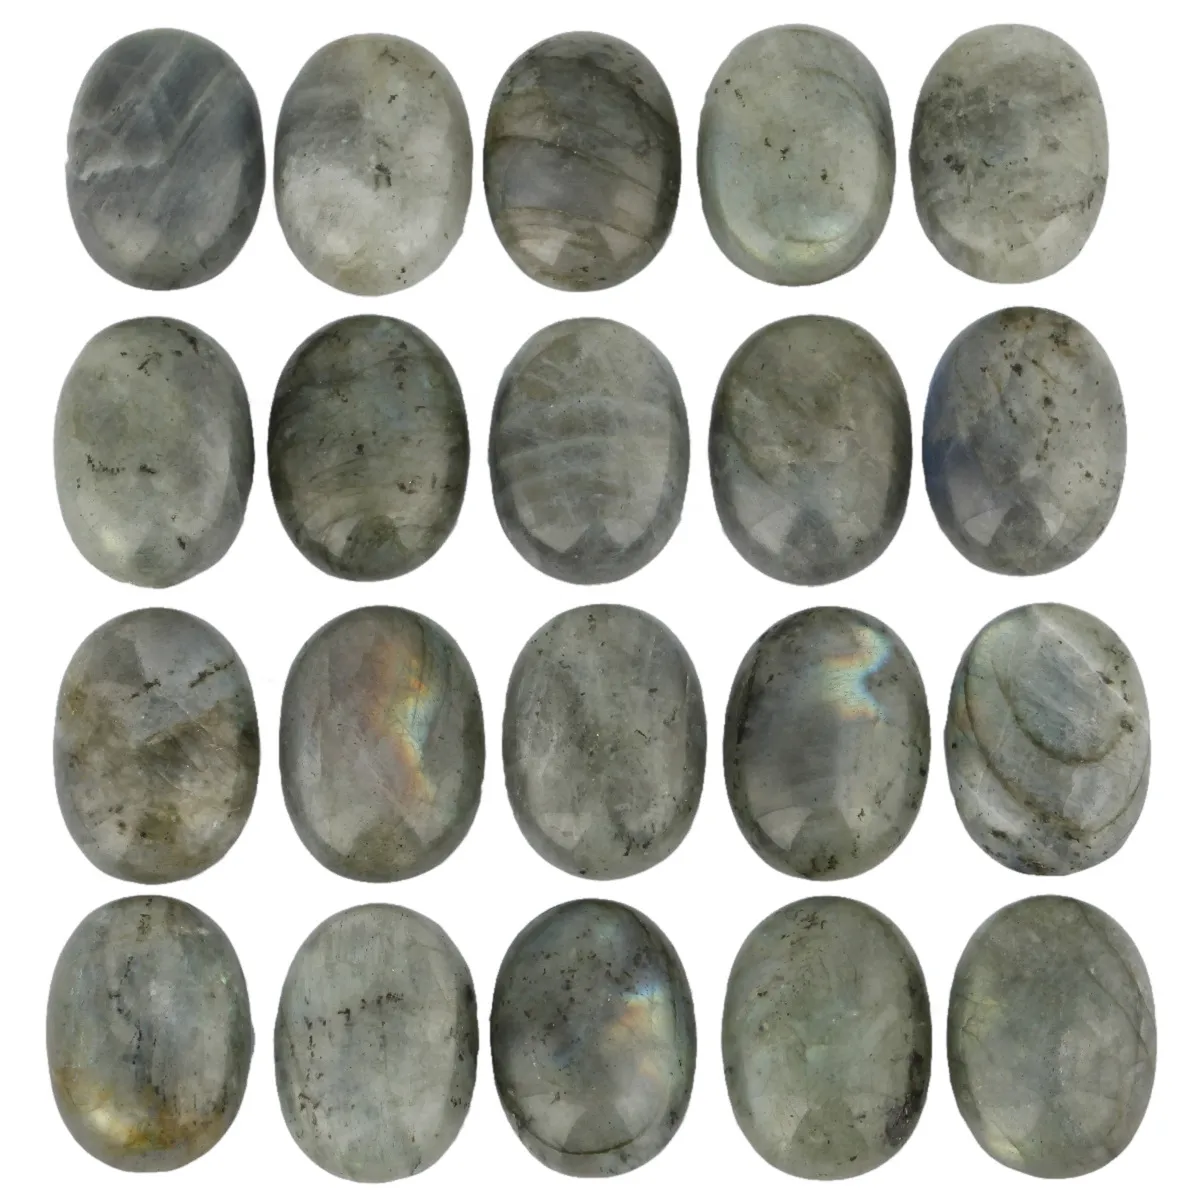 Naturlig Labradorit Oval Flat Back Gemstone Cabochons Healing Chakra Crystal Stone Bead Cab Cover Inget hål för smycken hantverk